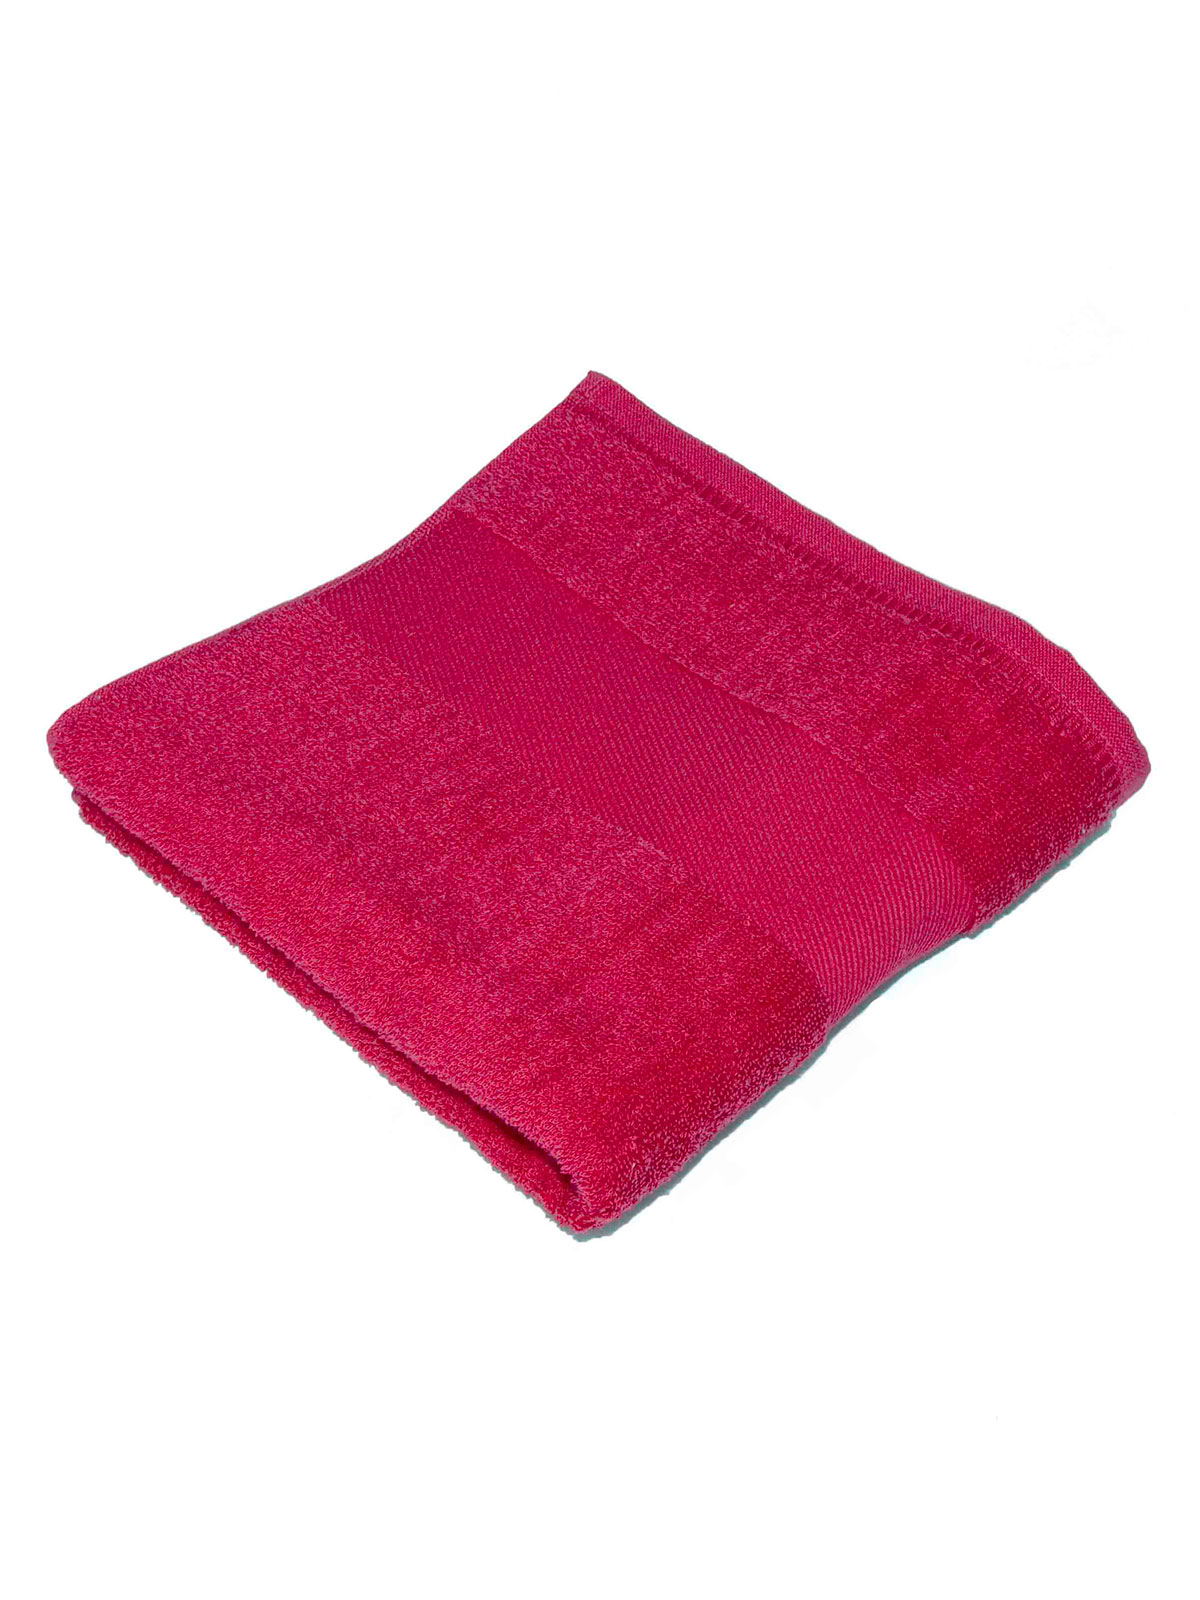 classic-towel-100x160-fuxia.webp